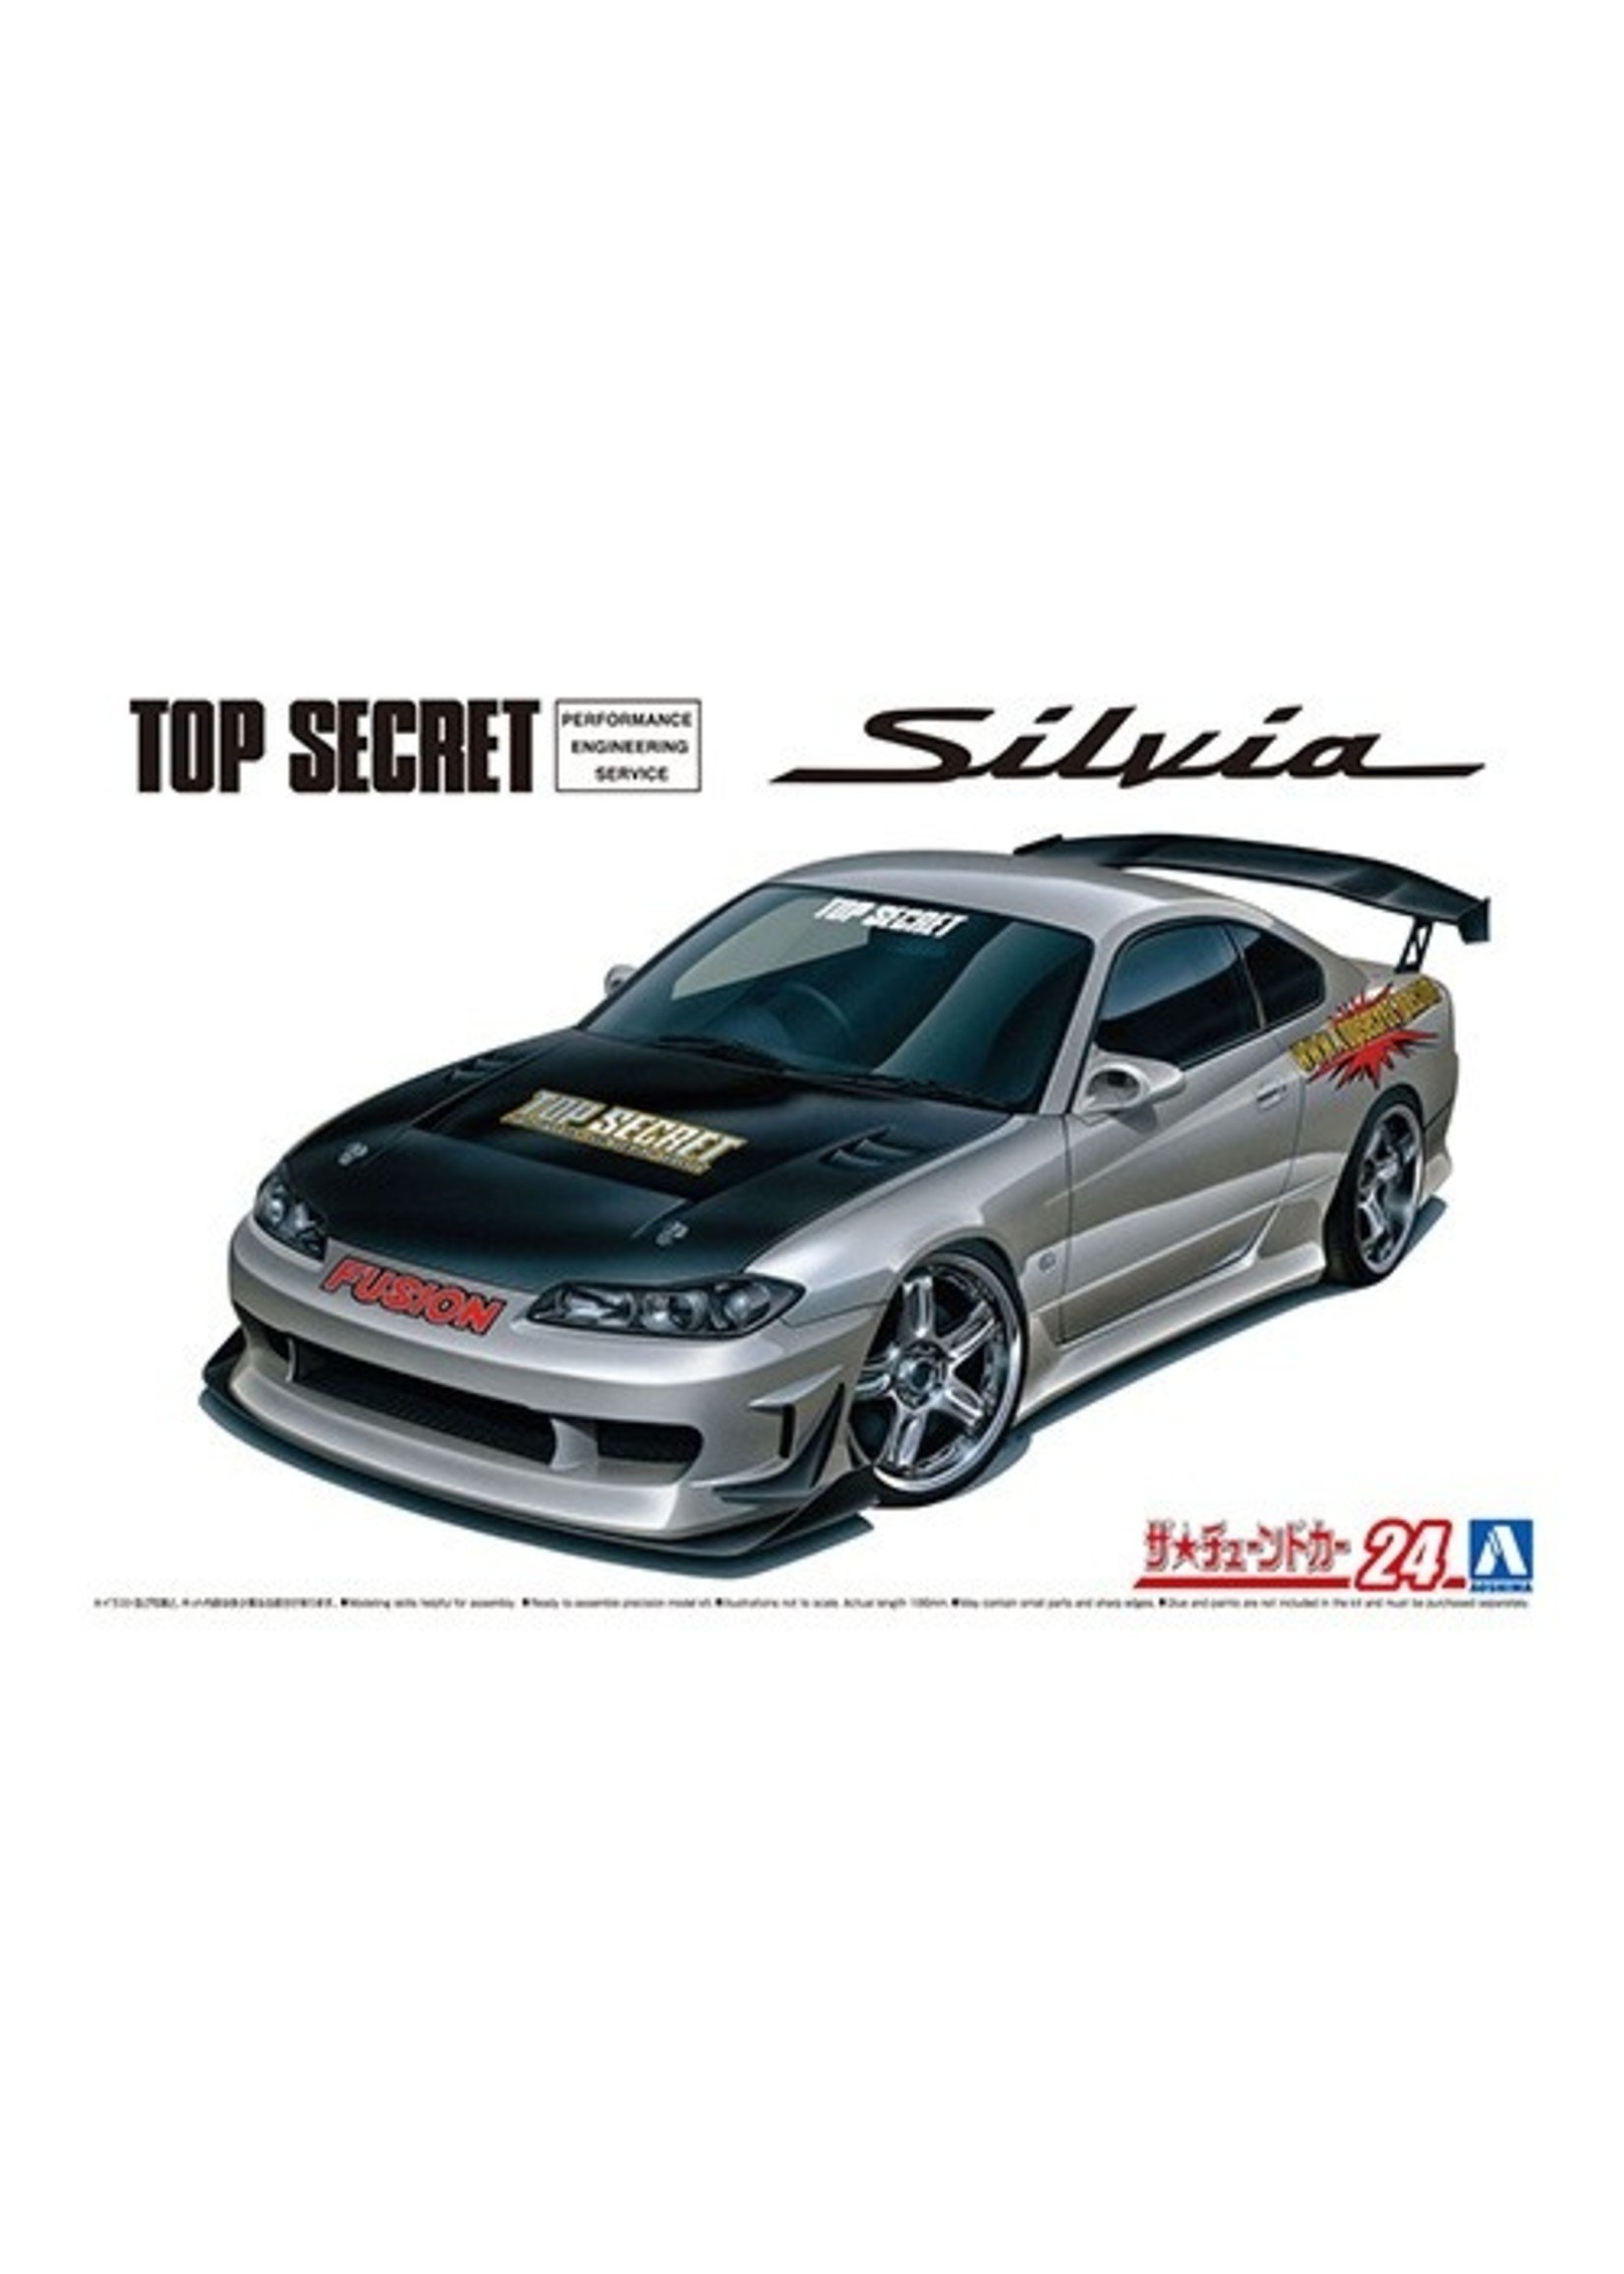 Aoshima 05874 - 1/24 TOPSECRET S15 Silvia '99 (Nissan)